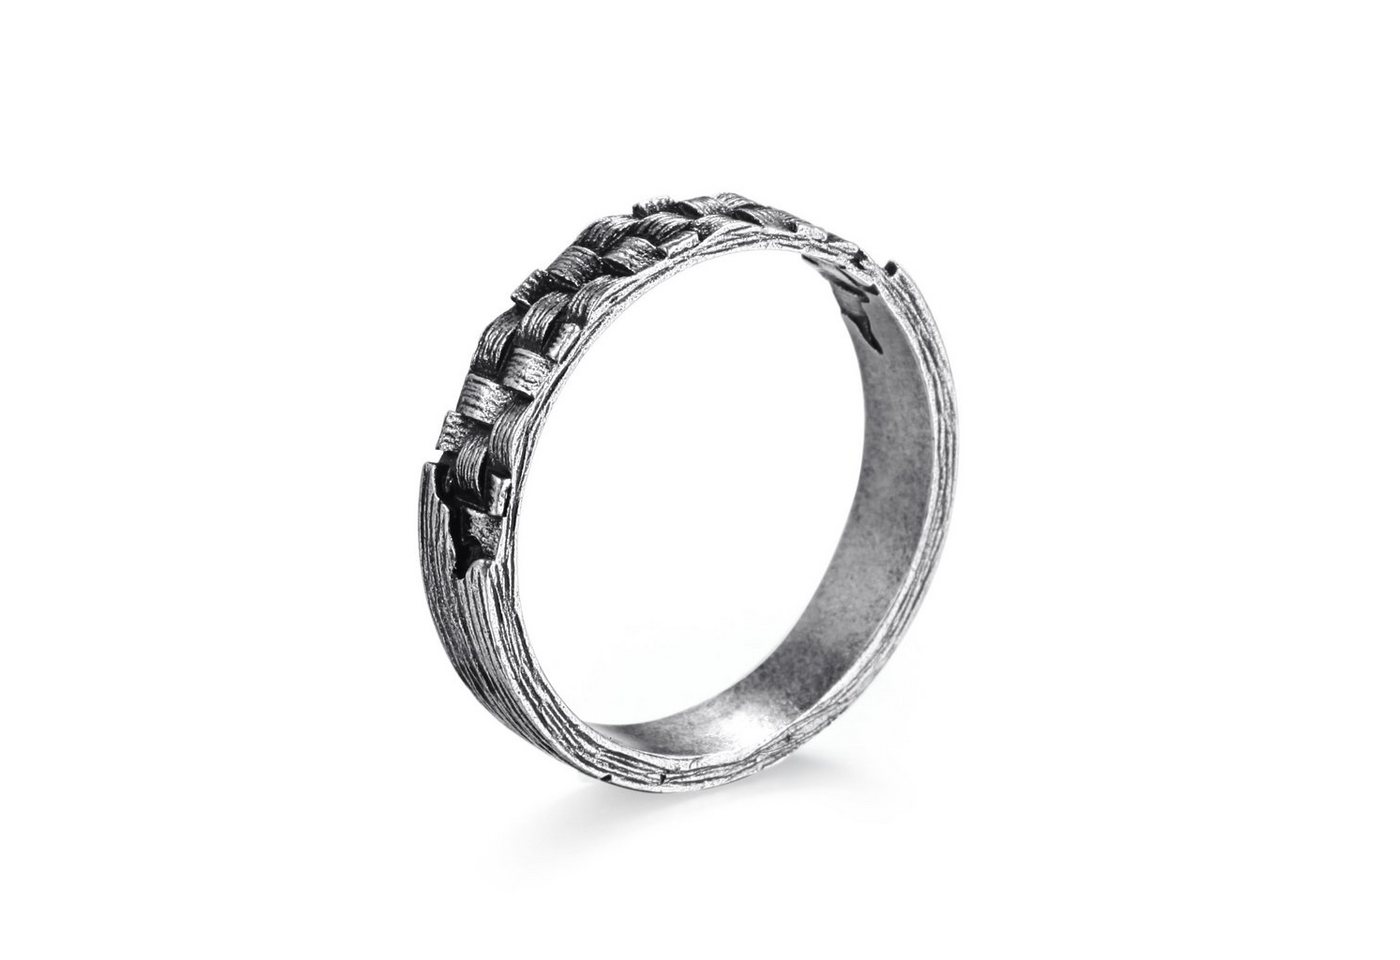 Kingka Fingerring WOVEN" Ring, 925 Sterling Silber im verwobenen Rattan Design" von Kingka